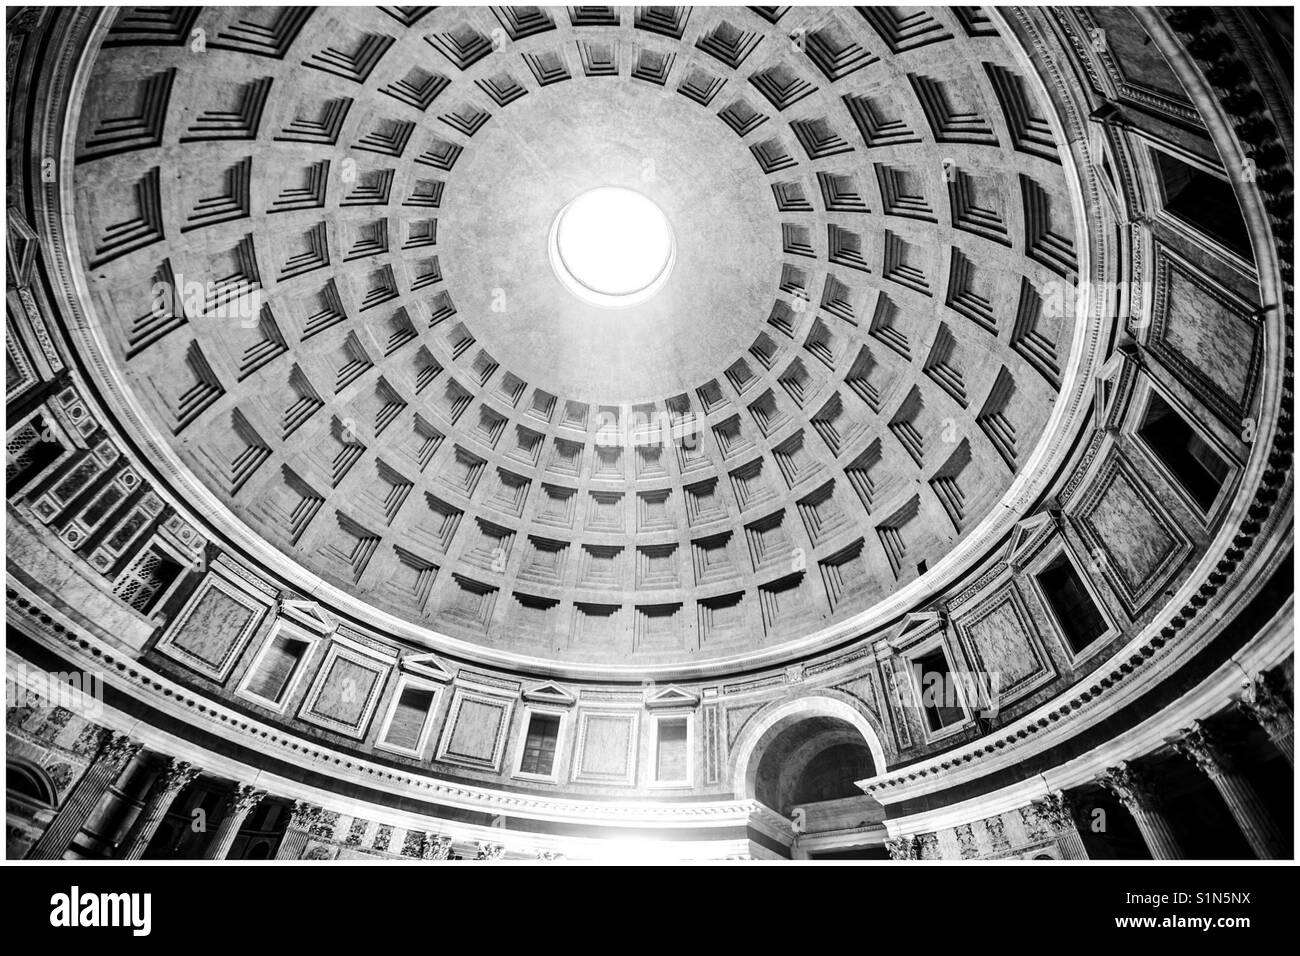 Le Pantheon Dome, montrant le Ocululus, la seule source de lumière naturelle. Rome, Italie Banque D'Images